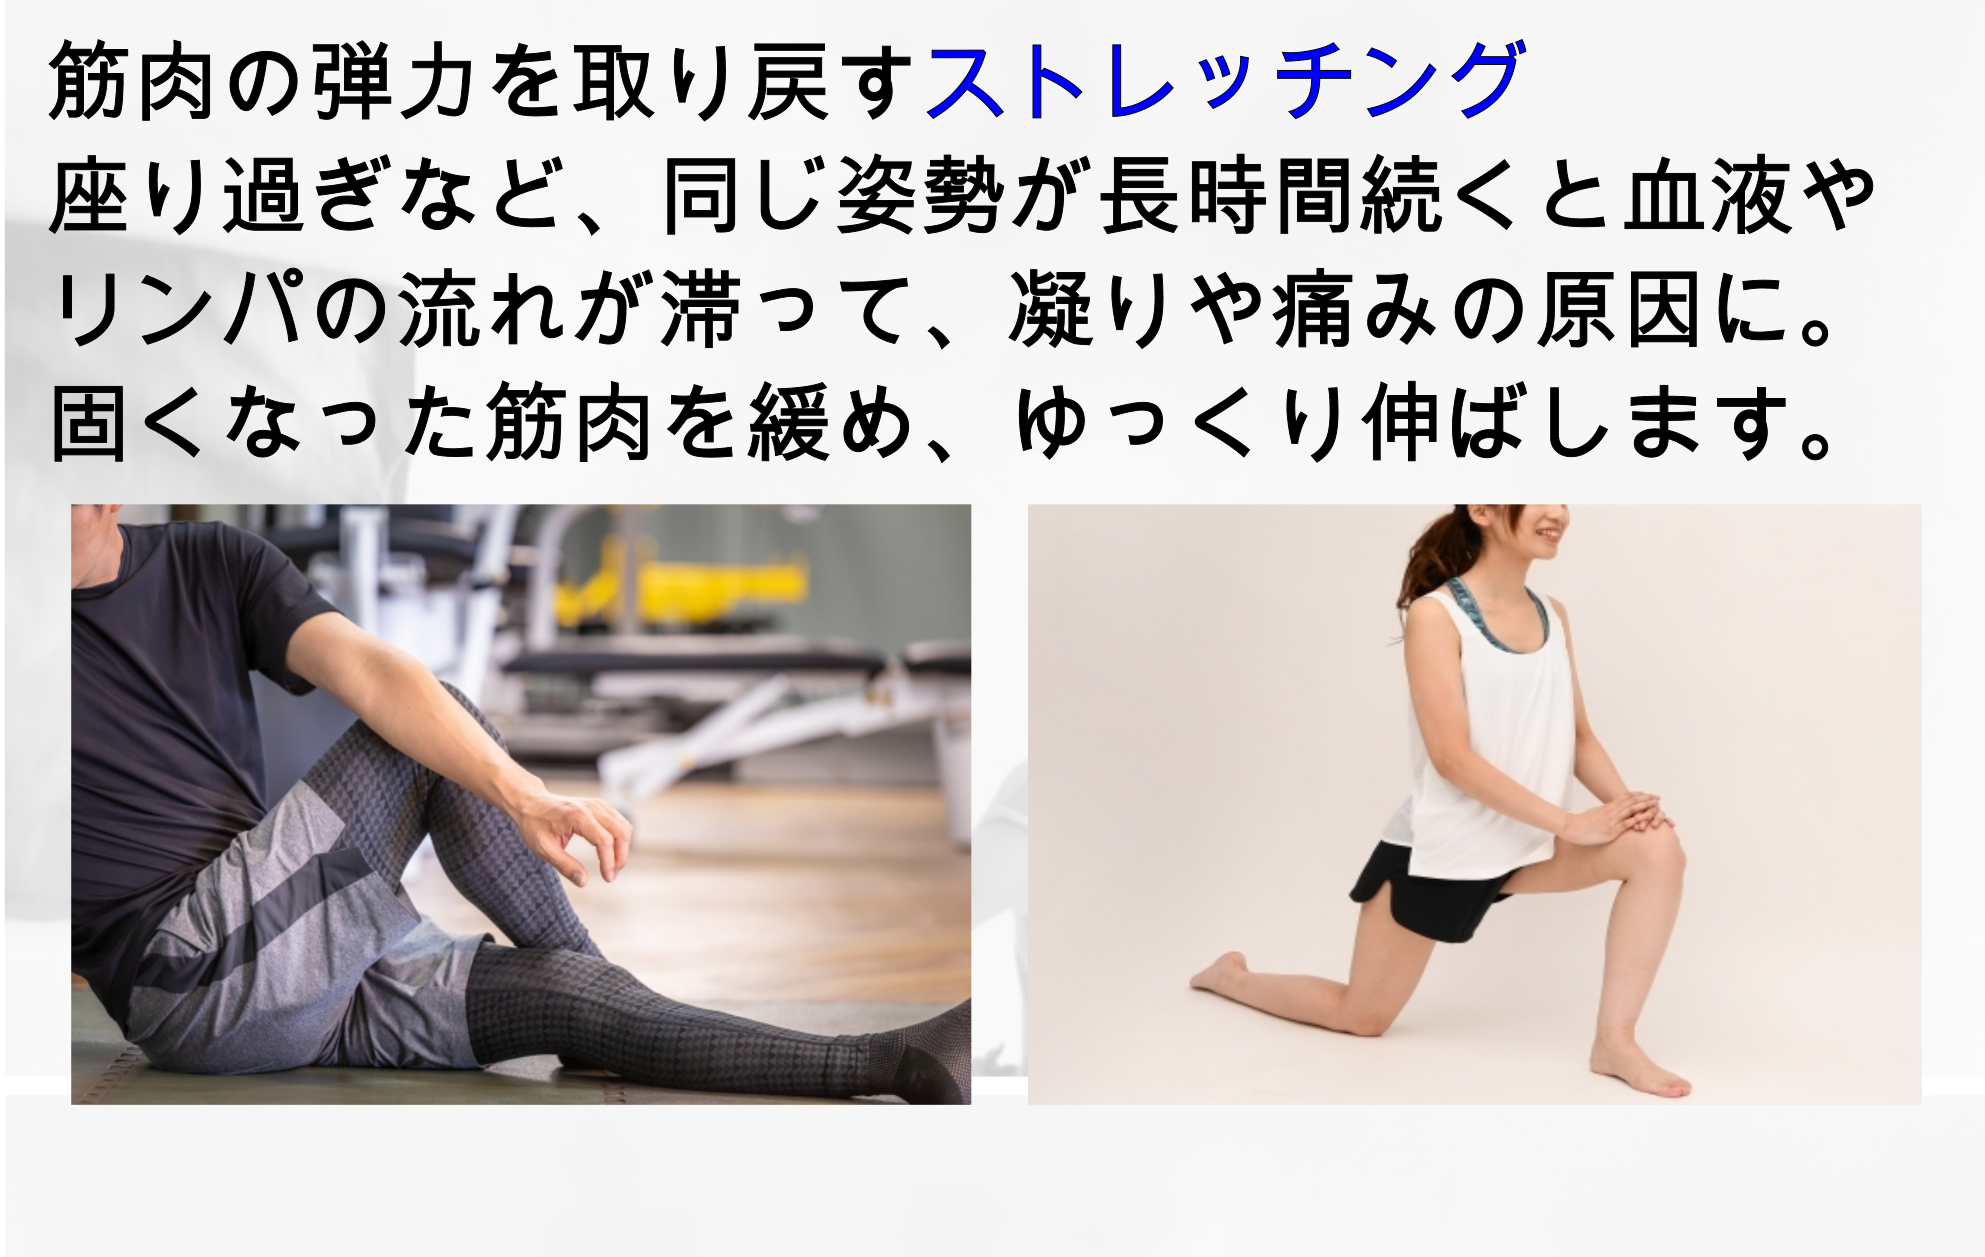 体幹のストレッチをする男性と脚のストレッチをする女性